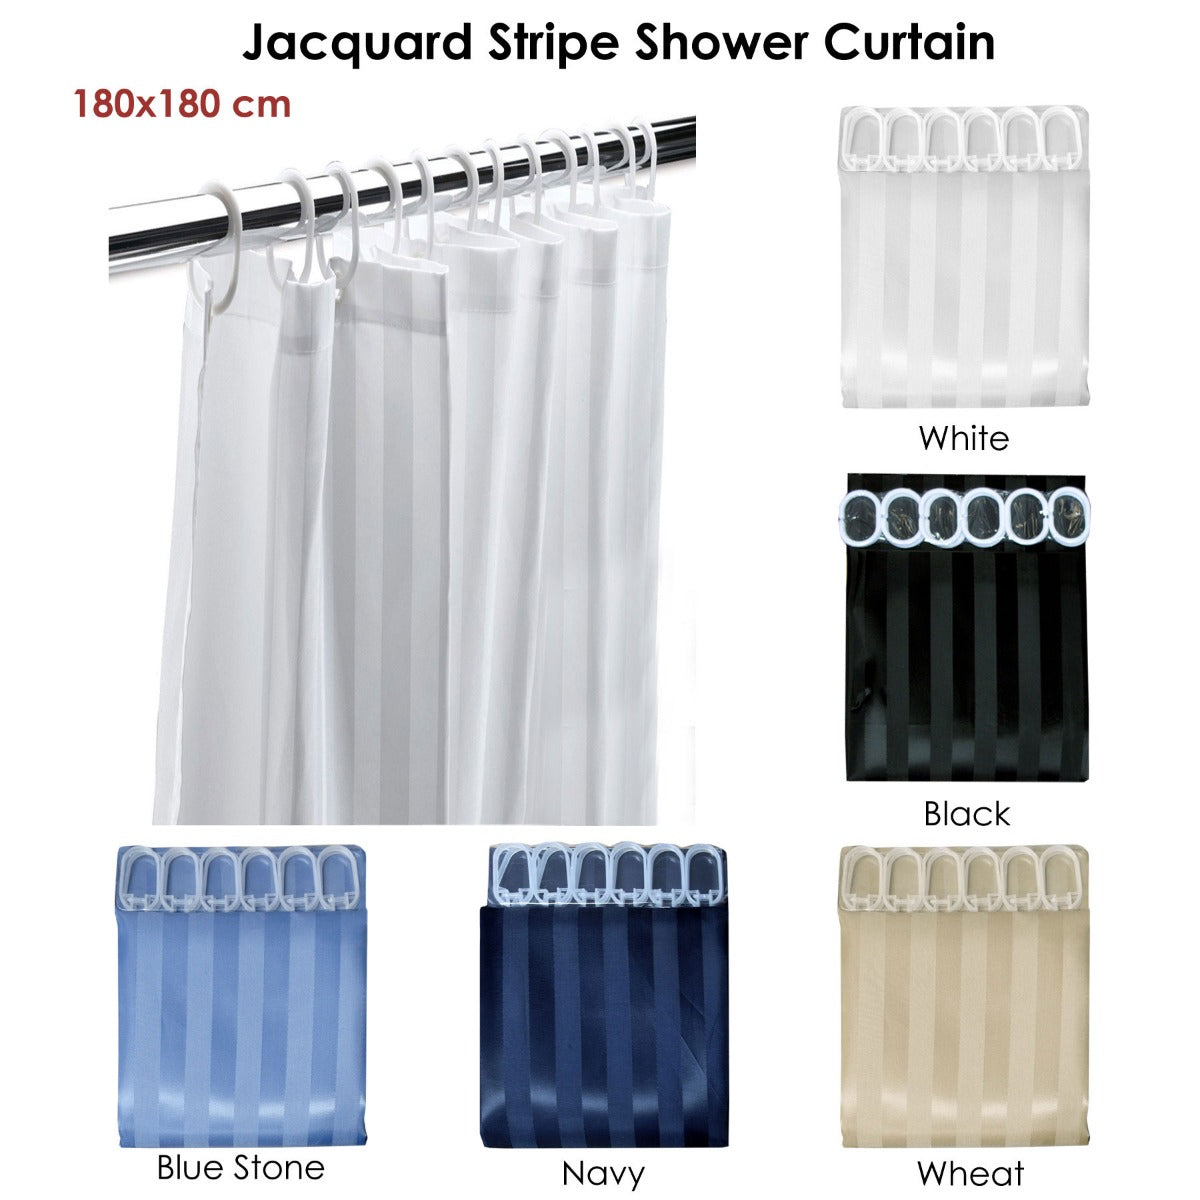 Jacquard Stripe Shower Curtain Black - BM House & Garden